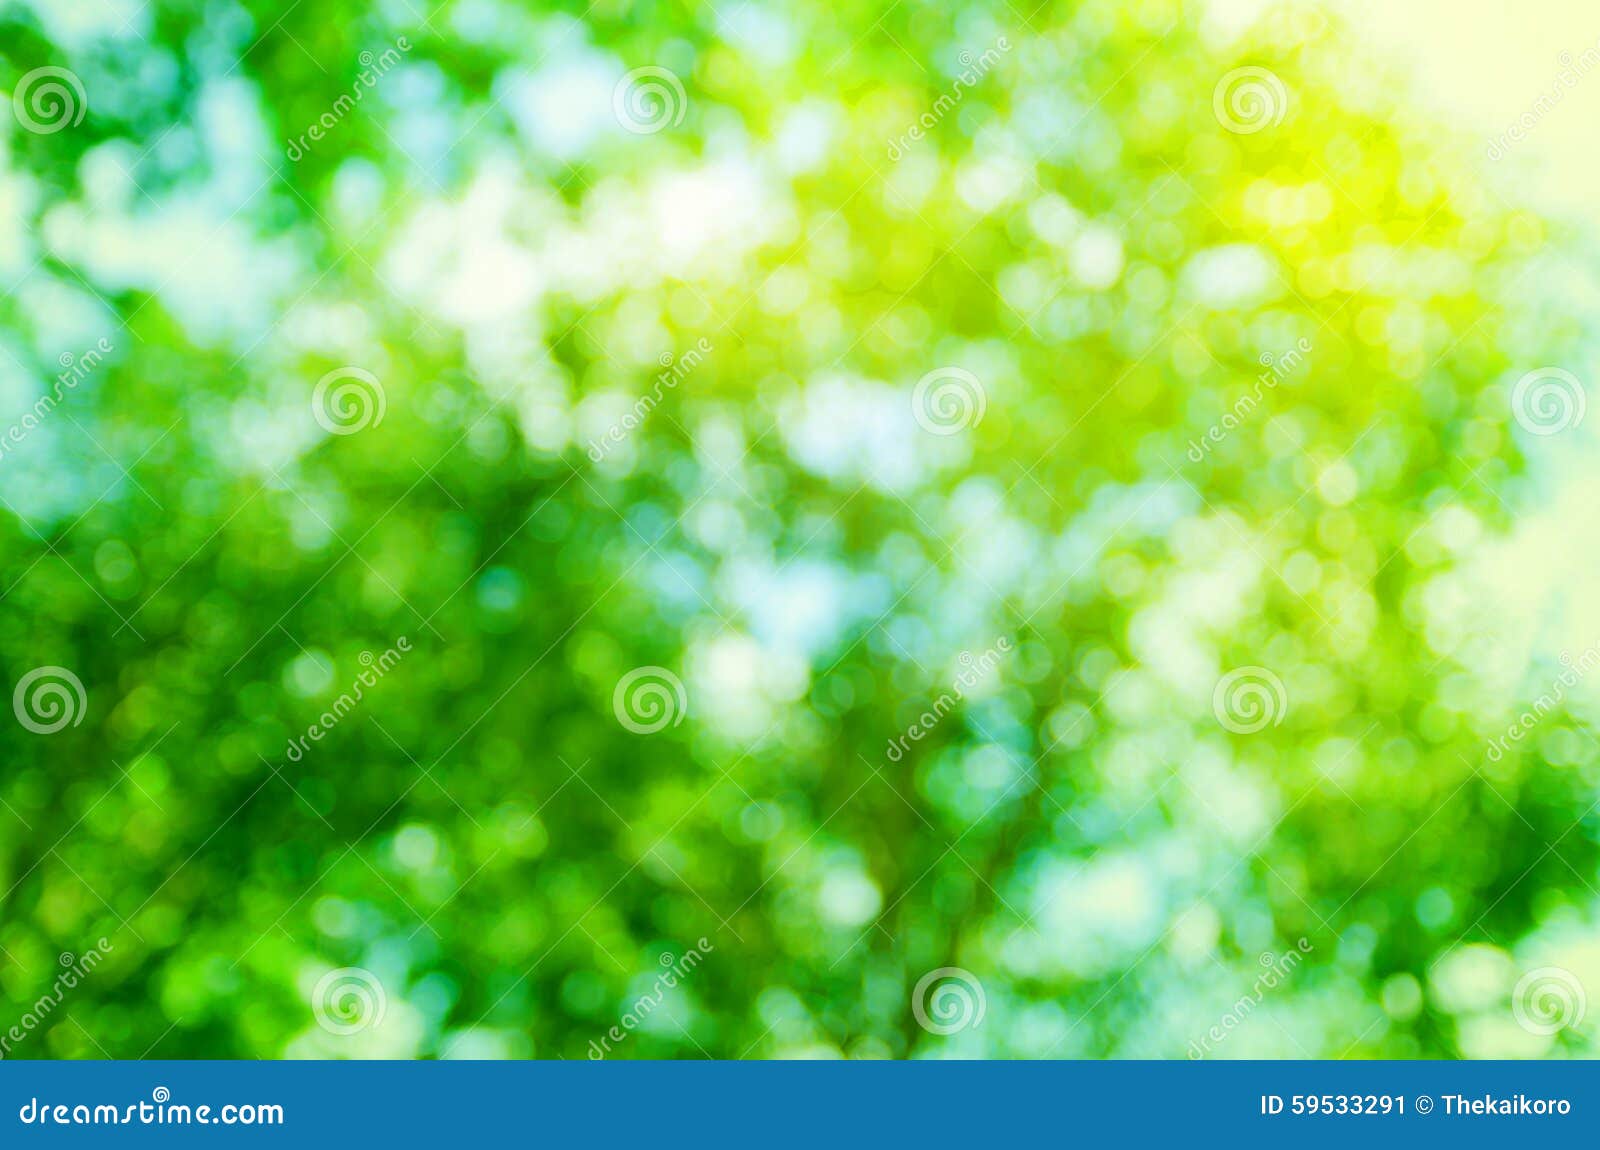 Giai điệu màu xanh của cây xanh là một cái nhìn thú vị cho mắt. Và khi bạn kết hợp nó với hiệu ứng Bokeh, bạn sẽ cảm thấy mình đang được chìm đắm vào một tuyệt phẩm nghệ thuật. Hãy thưởng thức hình ảnh về cây xanh Bokeh để đắm chìm trong sắc thái của nó. Translation: The green melody of the green trees is a fascinating sight for the eyes. And when you combine it with the Bokeh effect, you will feel like you are immersed in a masterpiece. Check out the related image of Green Tree Bokeh to indulge into its ambiance.